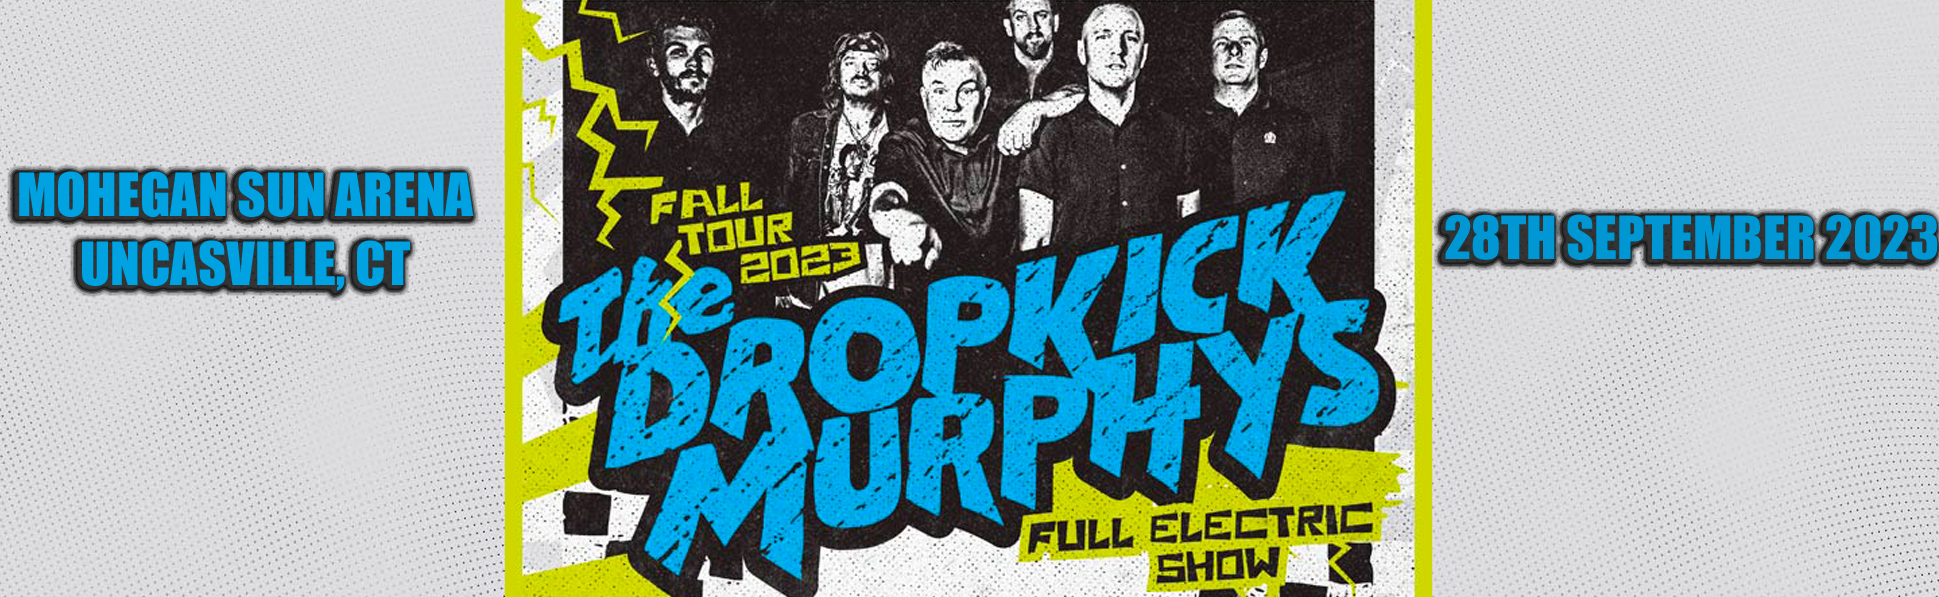 Dropkick Murphys at Mohegan Sun Arena